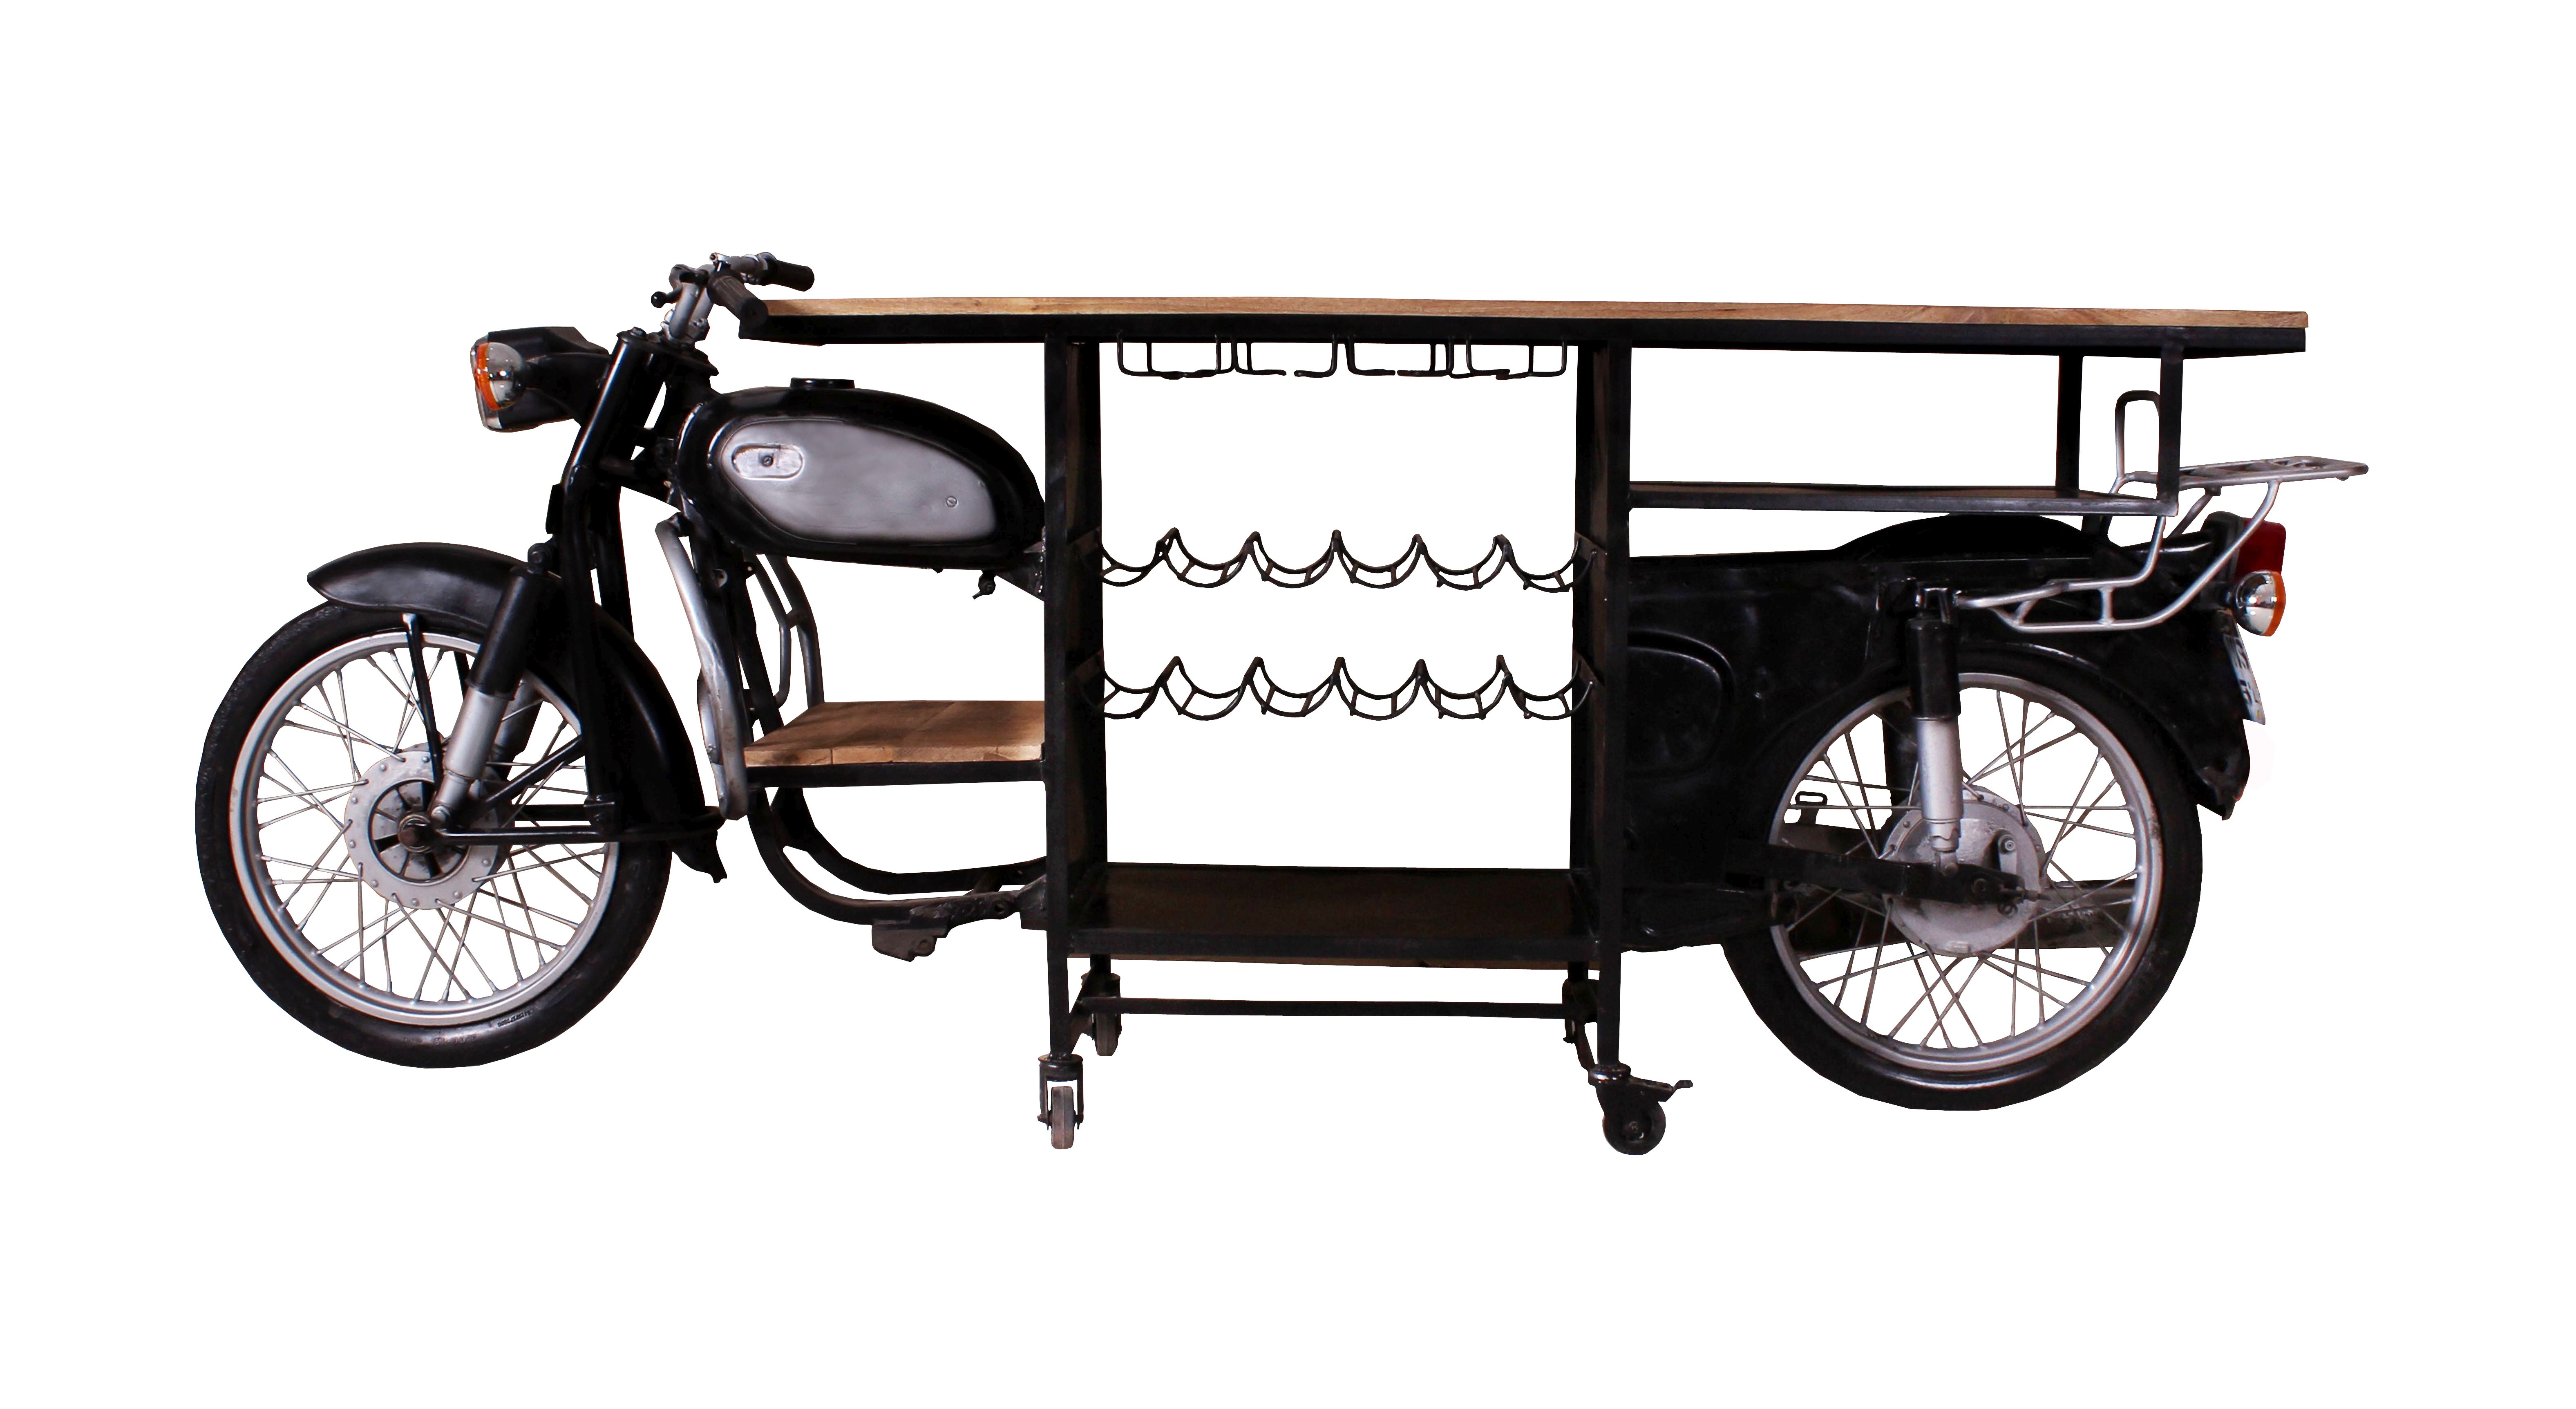 SIT Möbel THIS & THAT Stehtisch aus einem recycelten Rajdoot-Motorrad, mit Ablage für Flaschen und Gläser